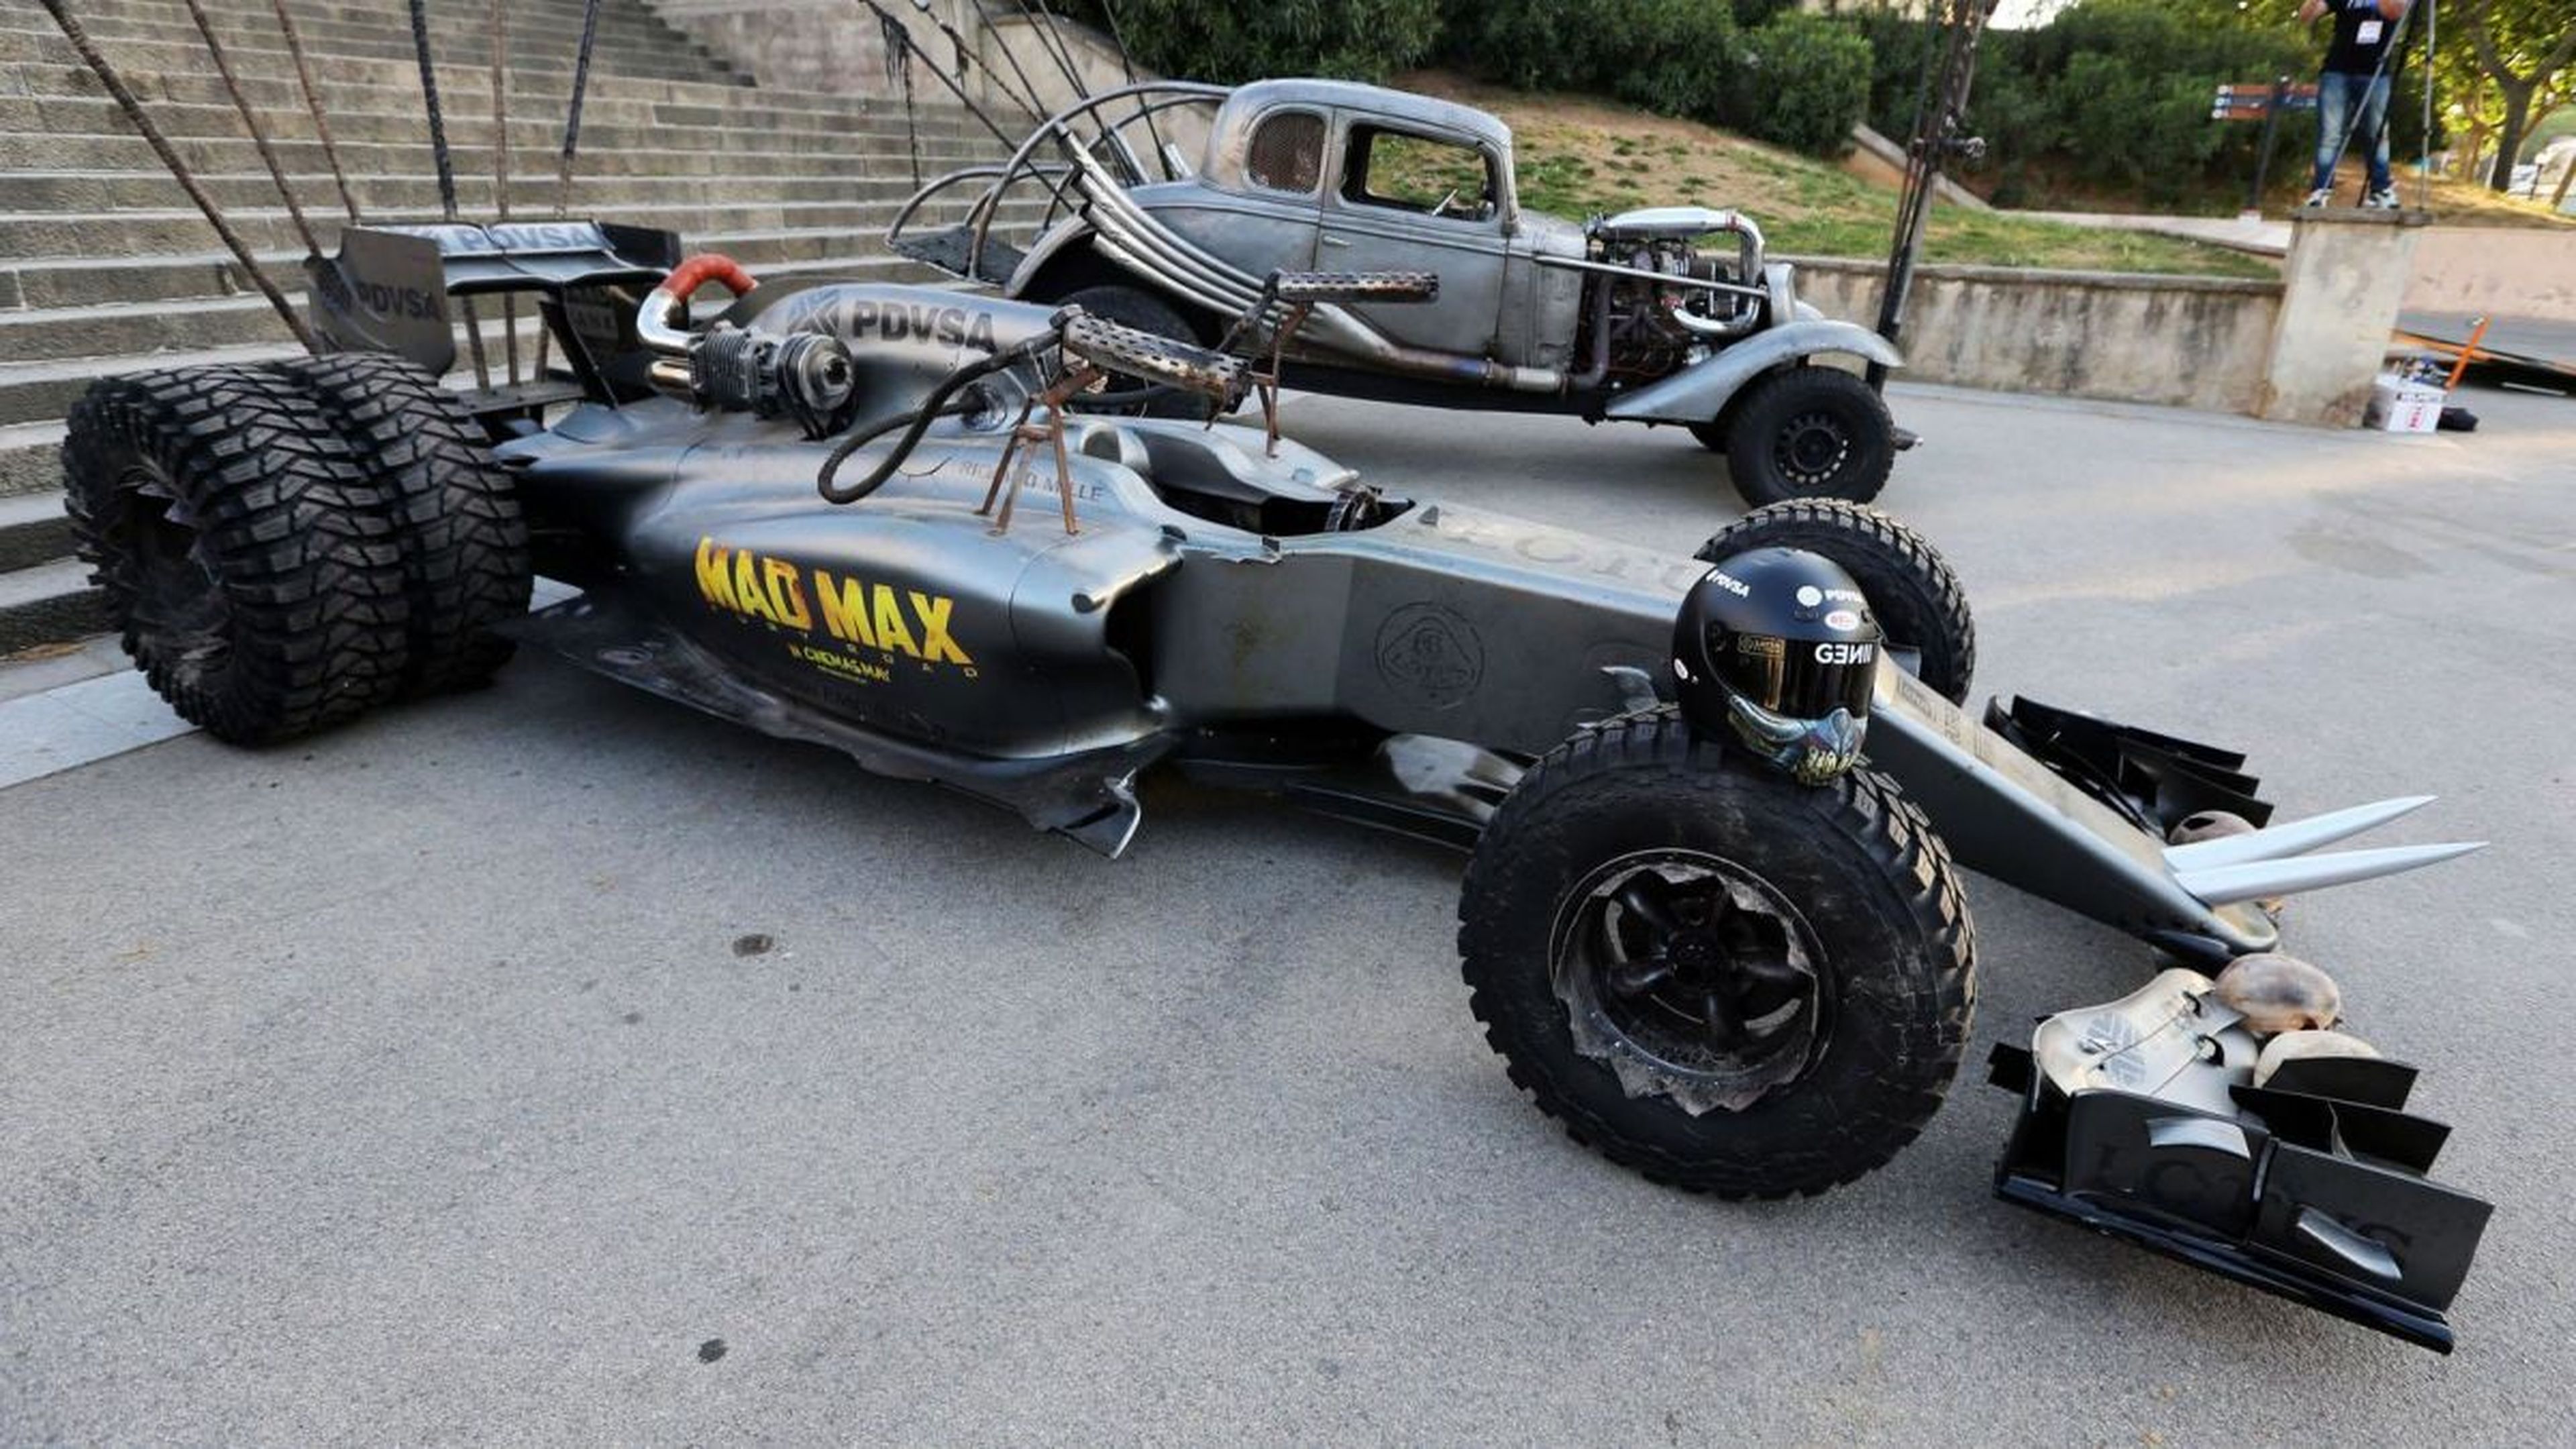 Lotus F1 Mad Max Hybrid